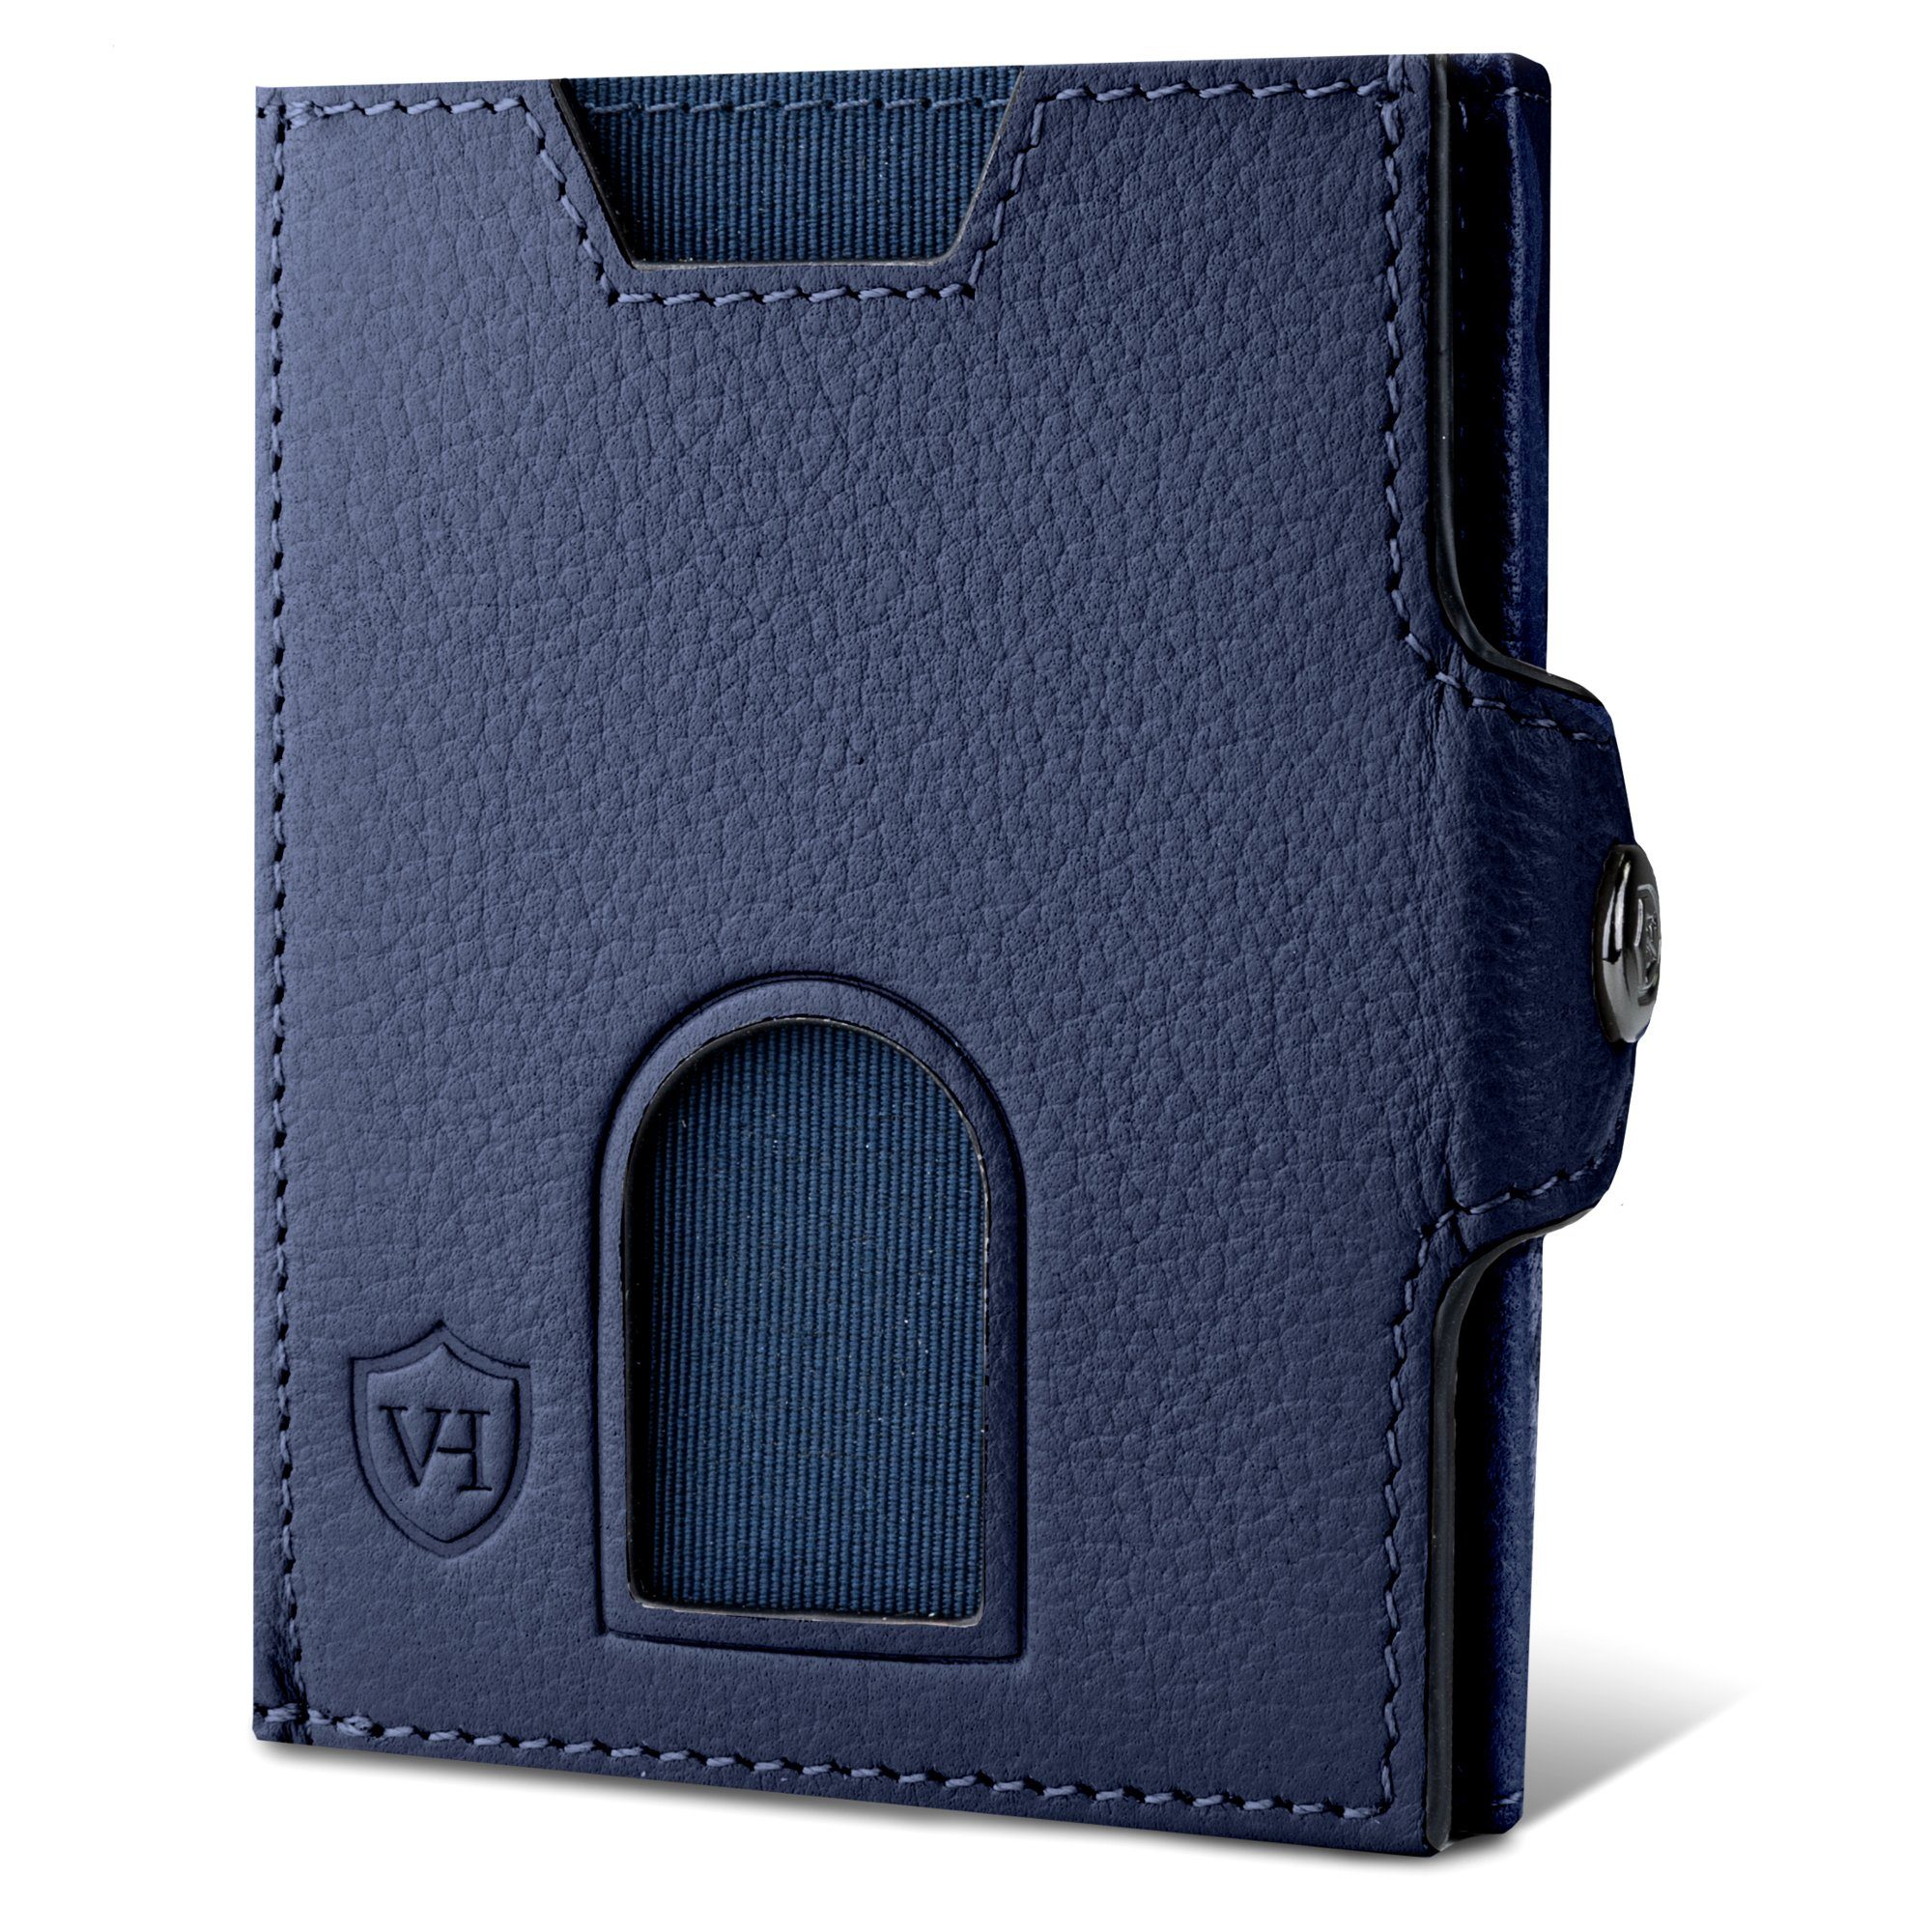 VON HEESEN Geldbörse Whizz Wallet mit 5 Kartenfächer & XXL-Münzfach, Slim Wallet Geldbeutel Portemonnaie inkl. RFID-Schutz & Geschenkbox Blau